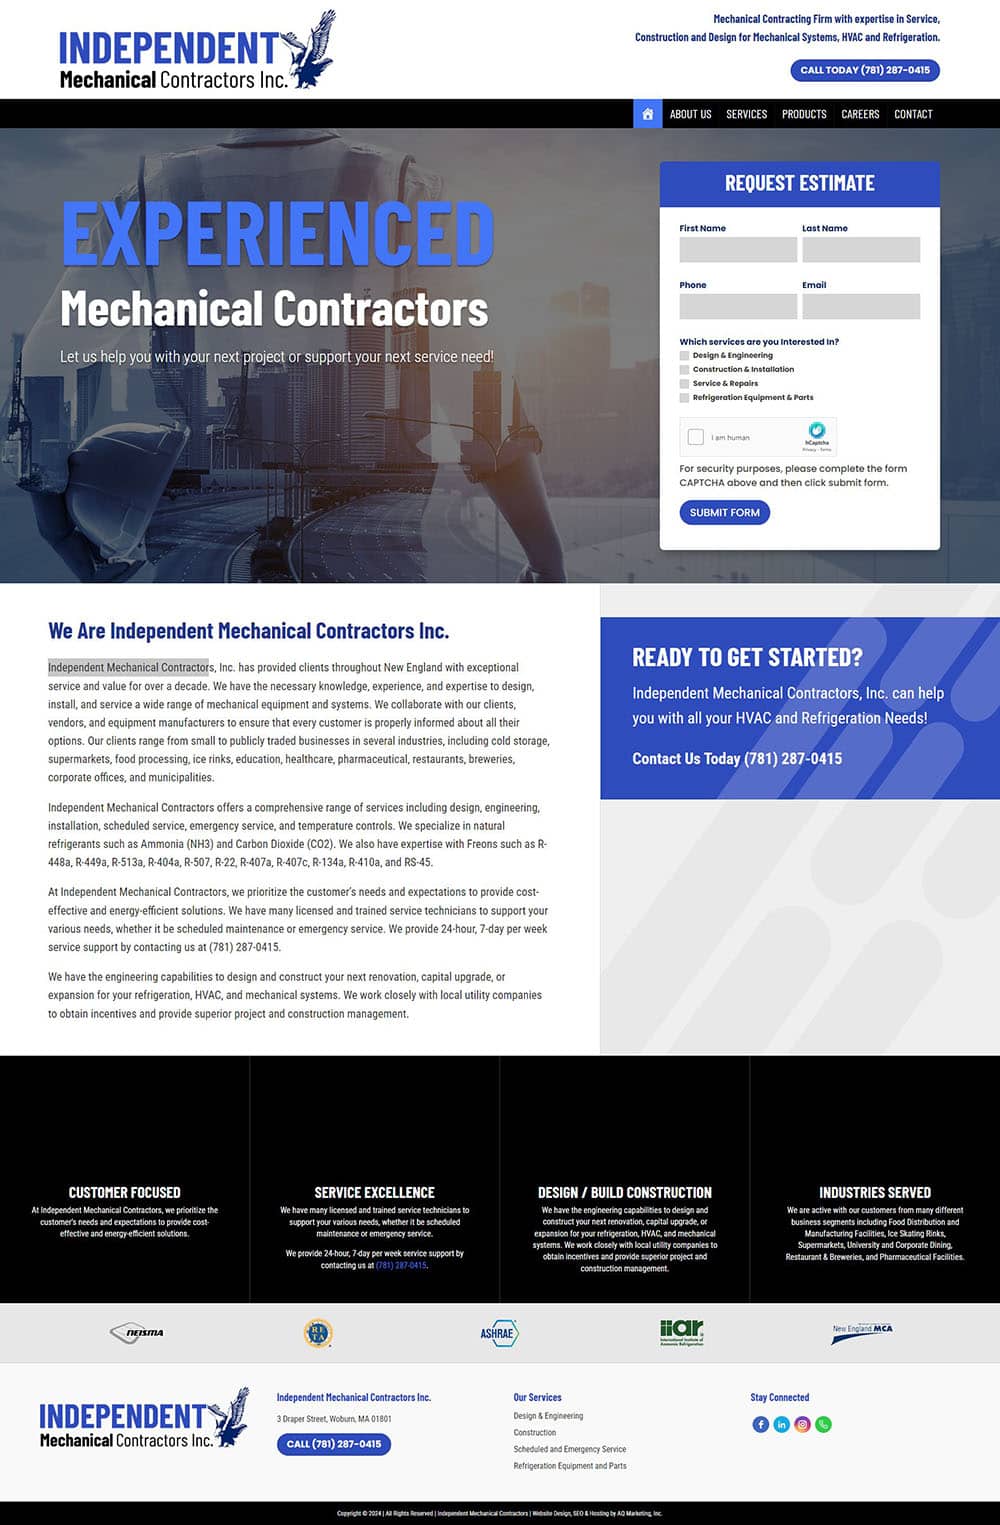 Independent Mechanical Contractors